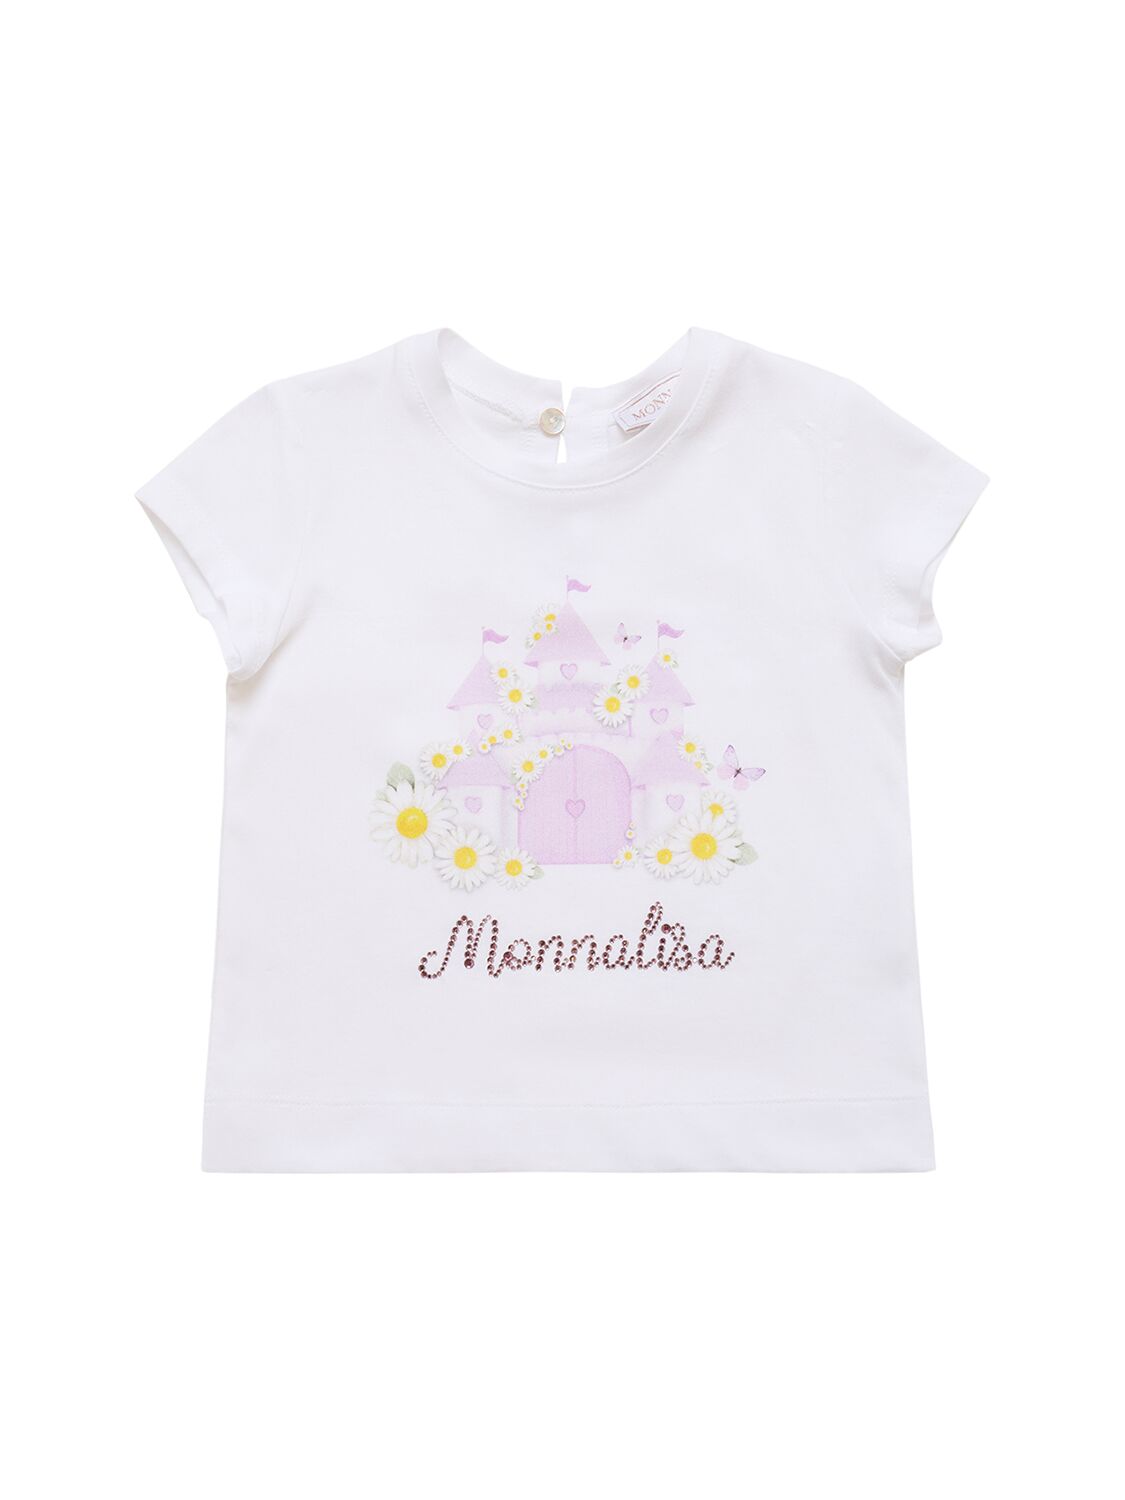 Monnalisa Kids' Printed Cotton Jersey T-shirt In 화이트